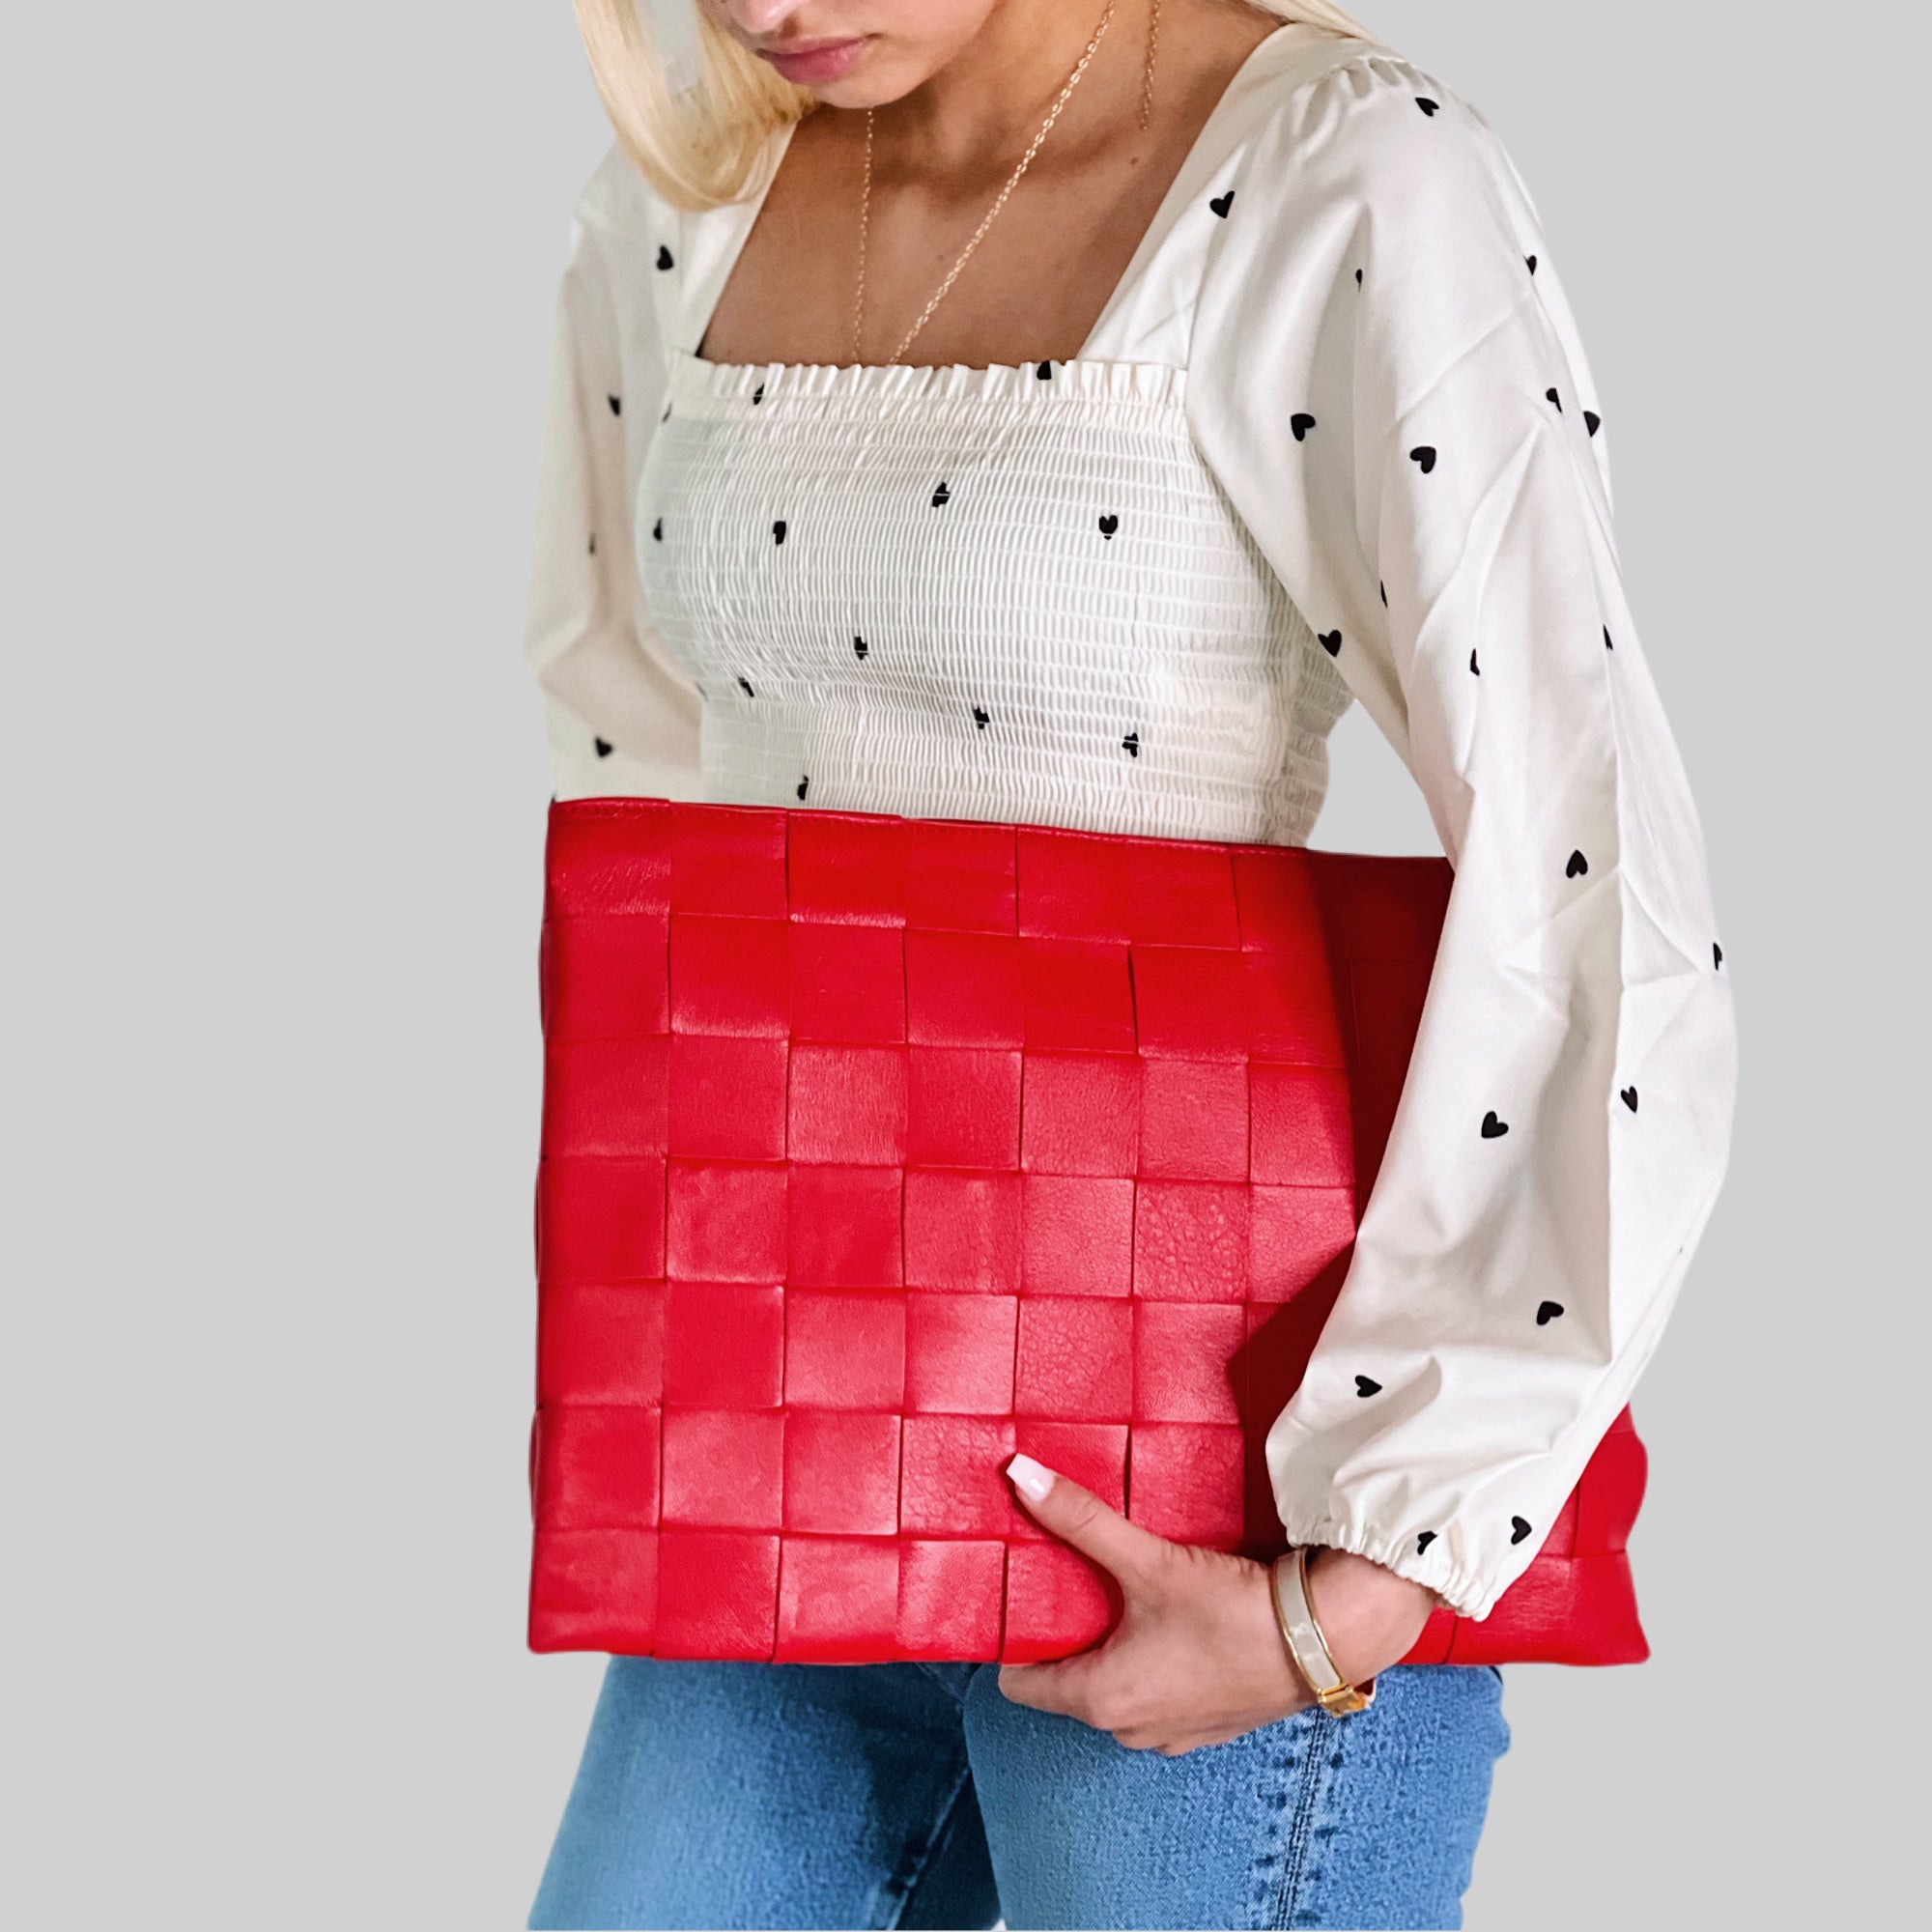 Stilig og profesjonell, kvinnen bærer stolt en Ribichini Square Laptop-veske i rødt, som tilfører elegant og sofistikert preg til antrekket.